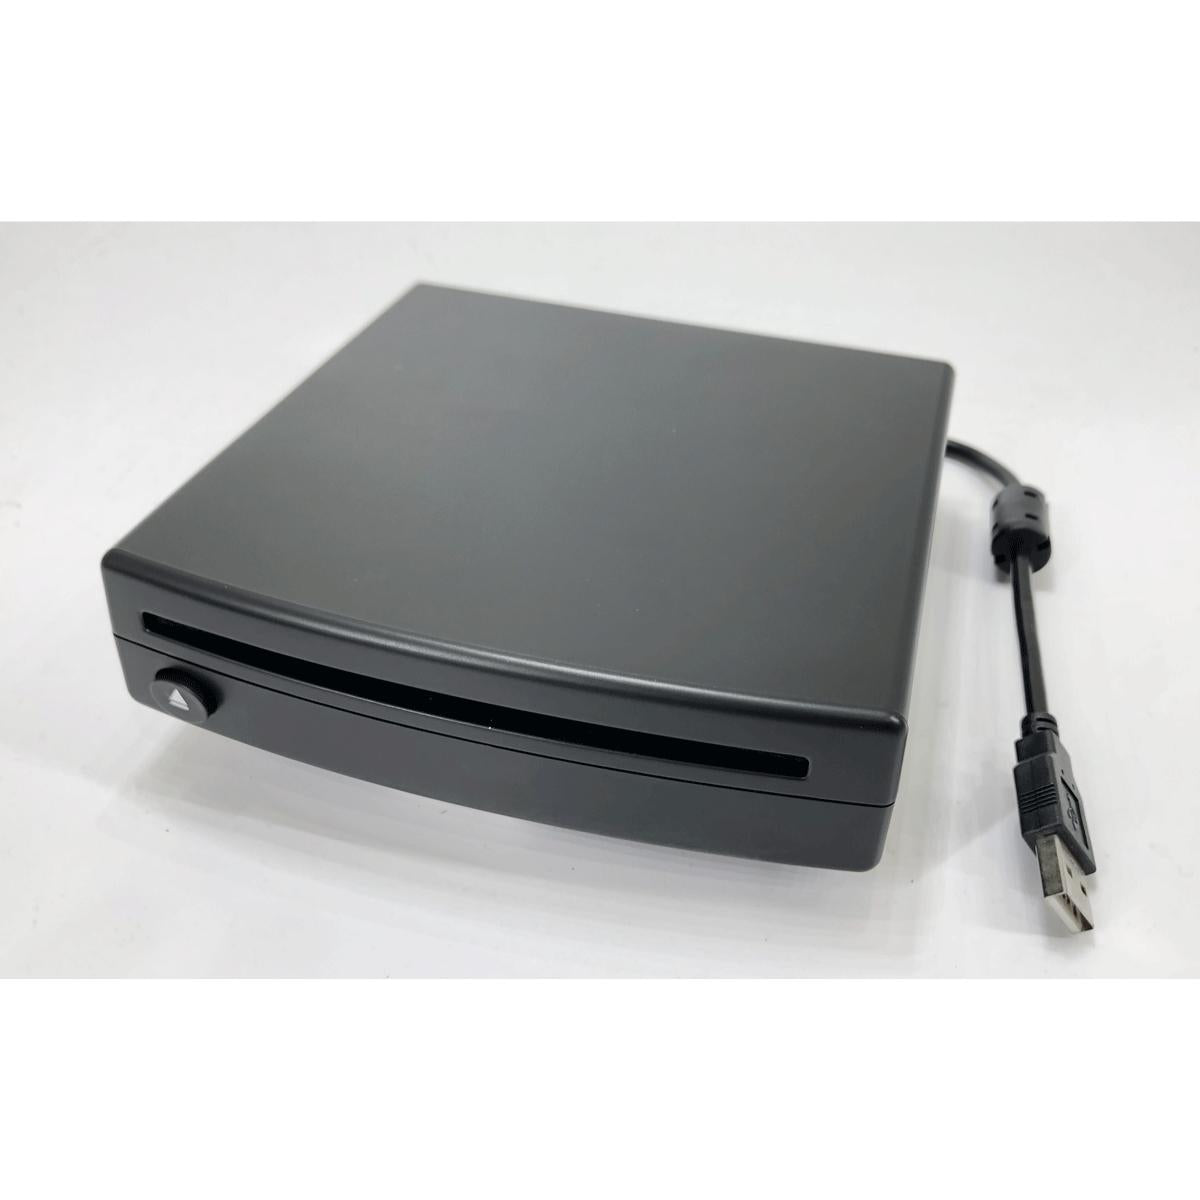 NAV-TV Kit 853 USB CD player (v1)